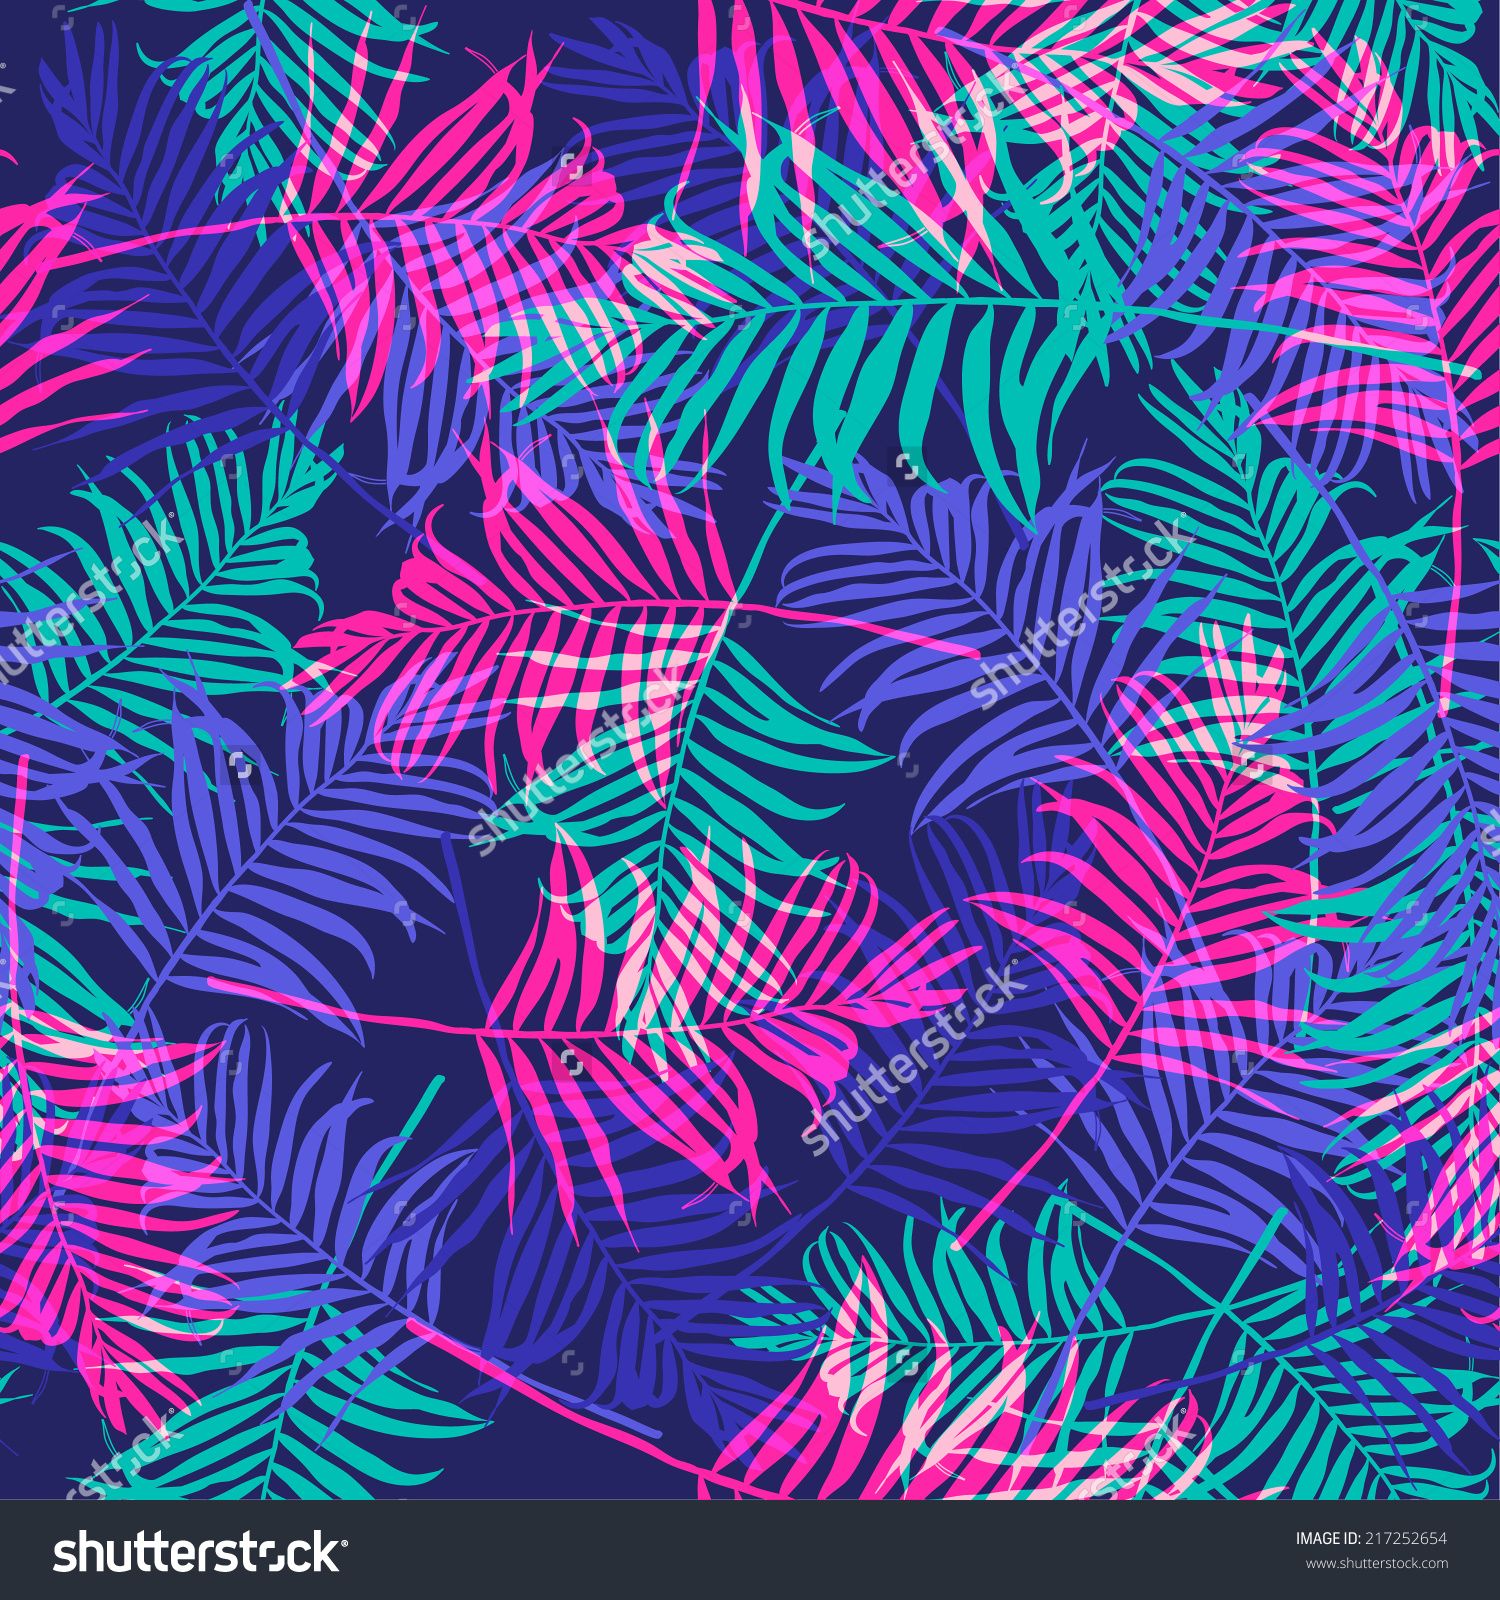 Neon HD wallpapers, Desktop wallpaper - most viewed